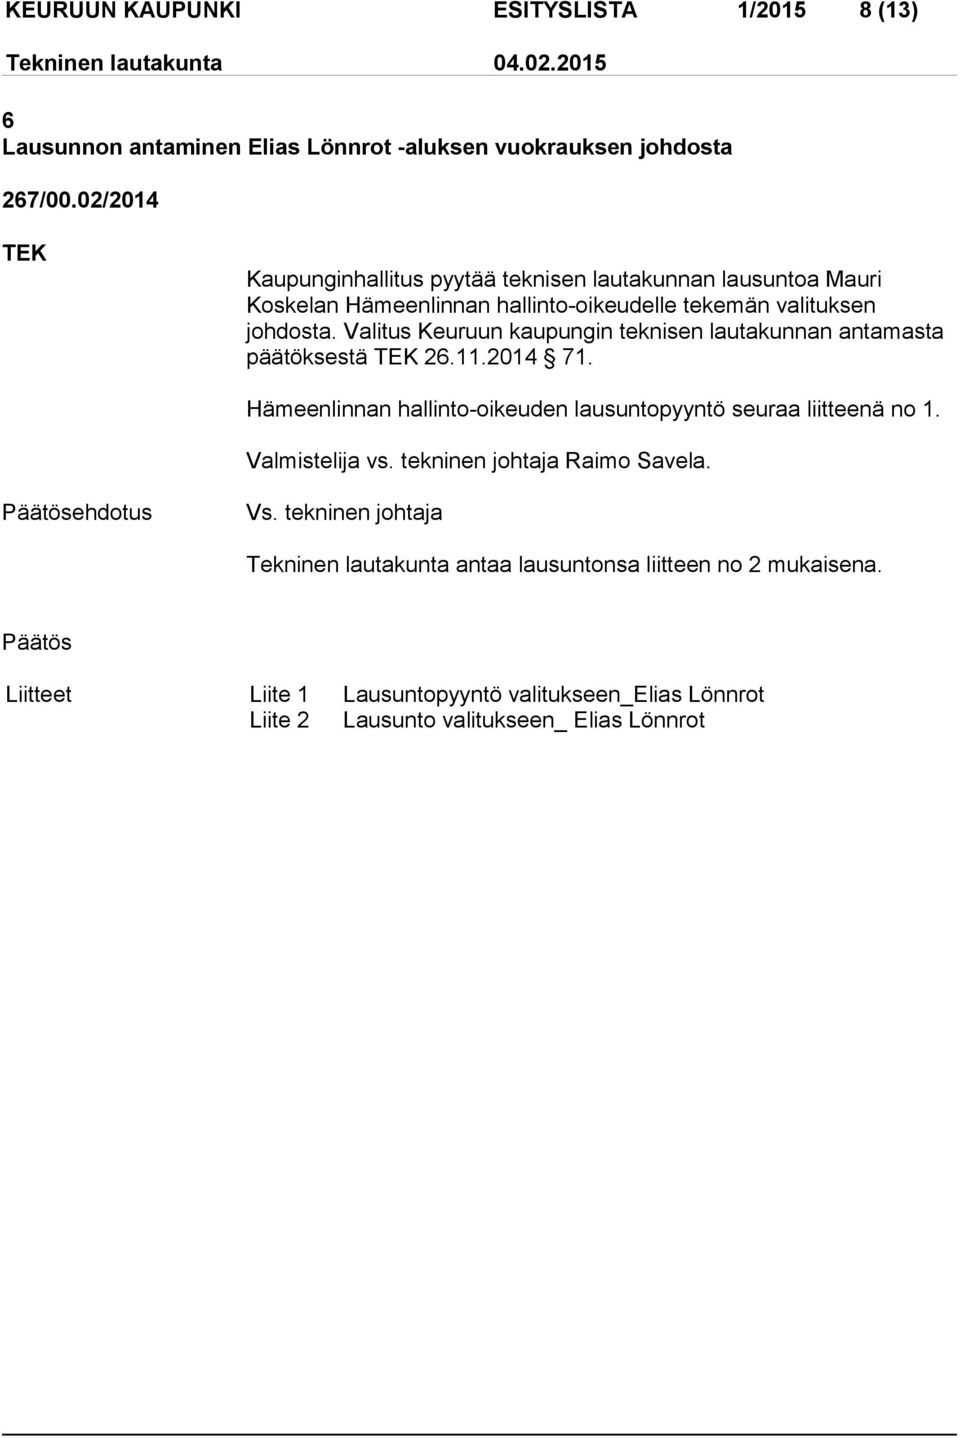 Valitus Keuruun kaupungin teknisen lautakunnan antamasta päätöksestä 26.11.2014 71. Hämeenlinnan hallinto-oikeuden lausuntopyyntö seuraa liitteenä no 1.